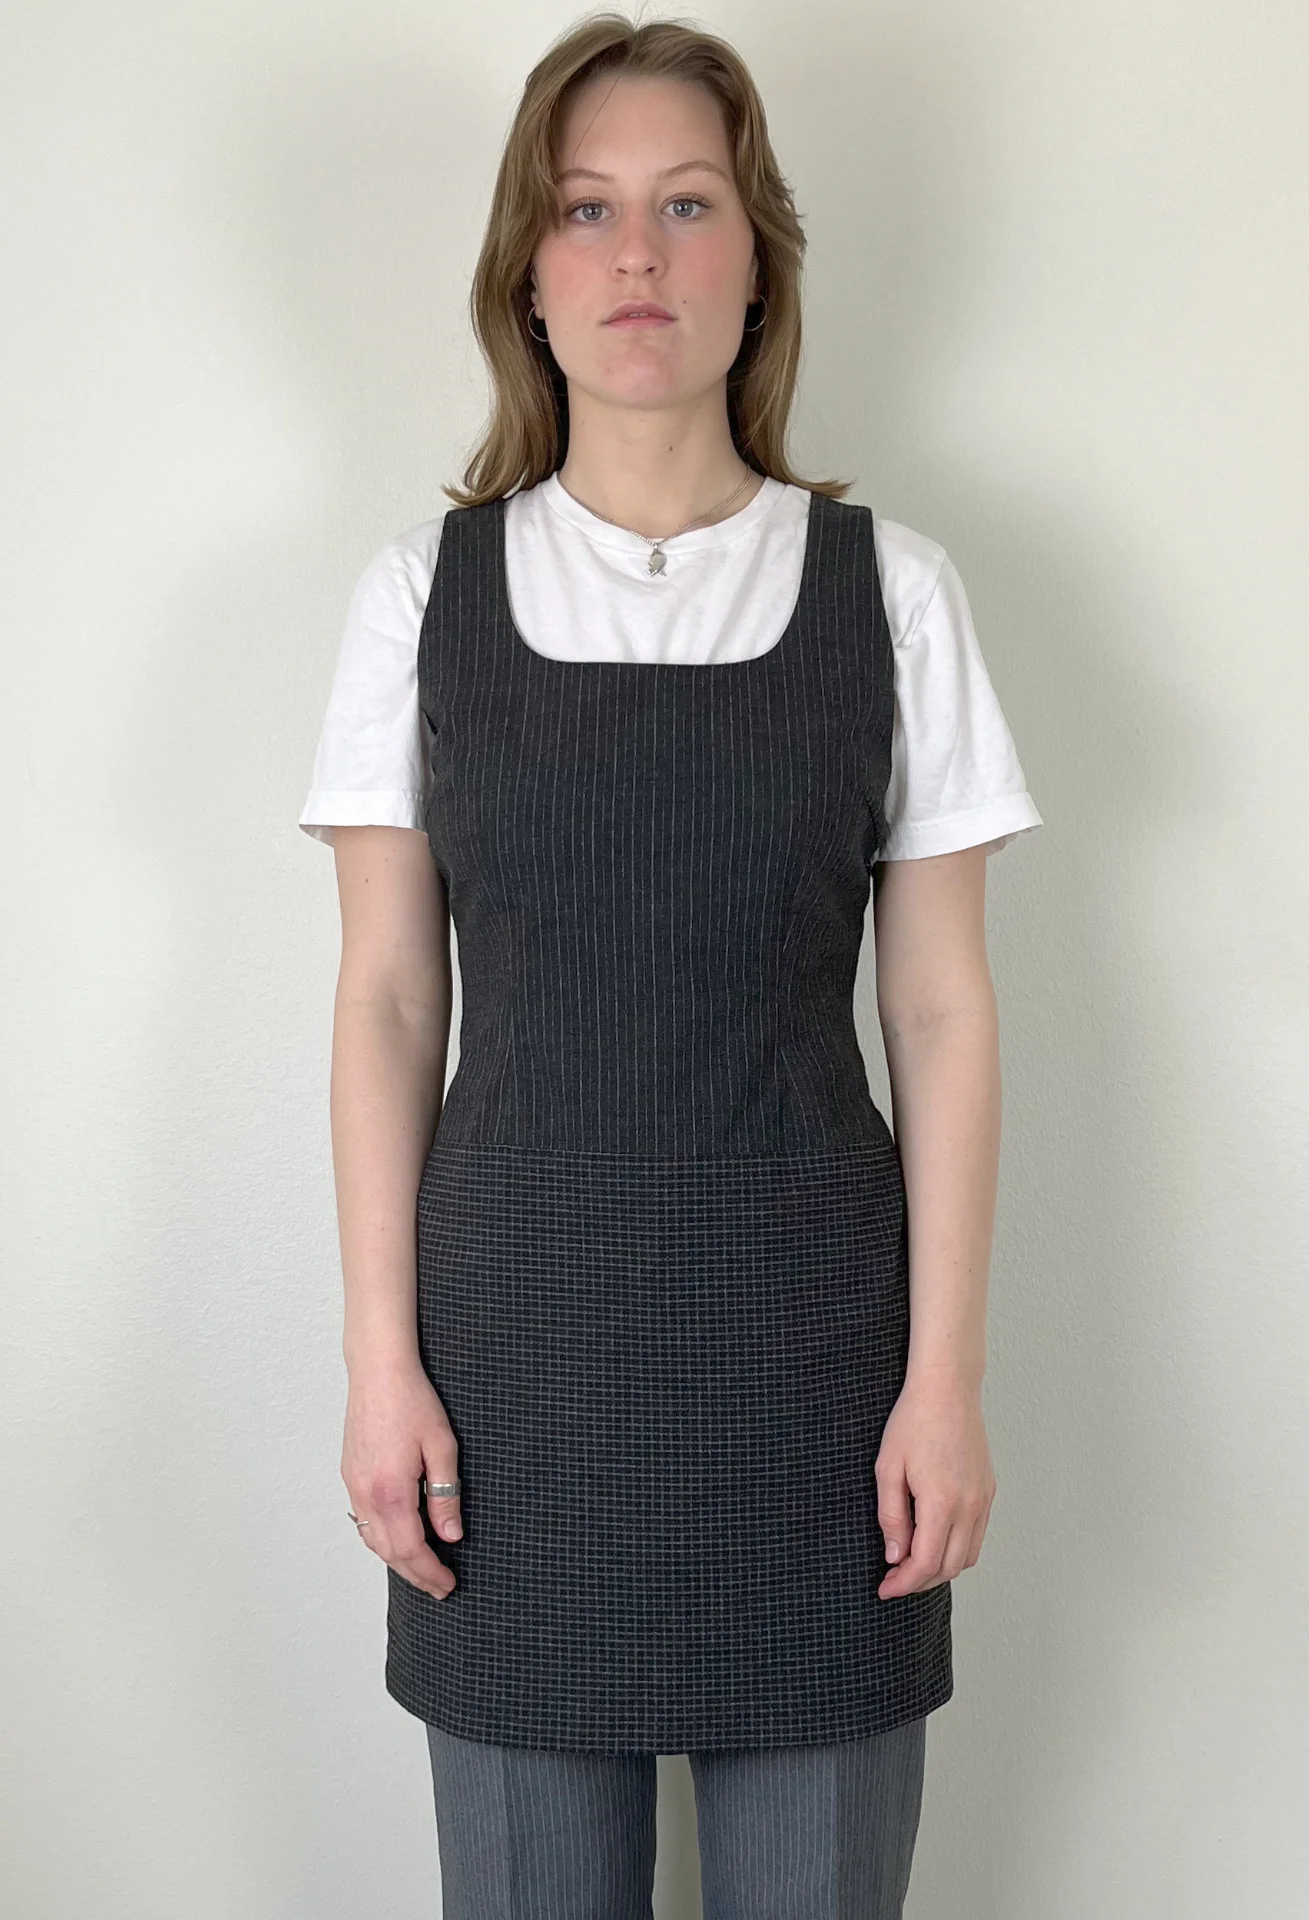 Hennes - Grey Patterned Dress (38)